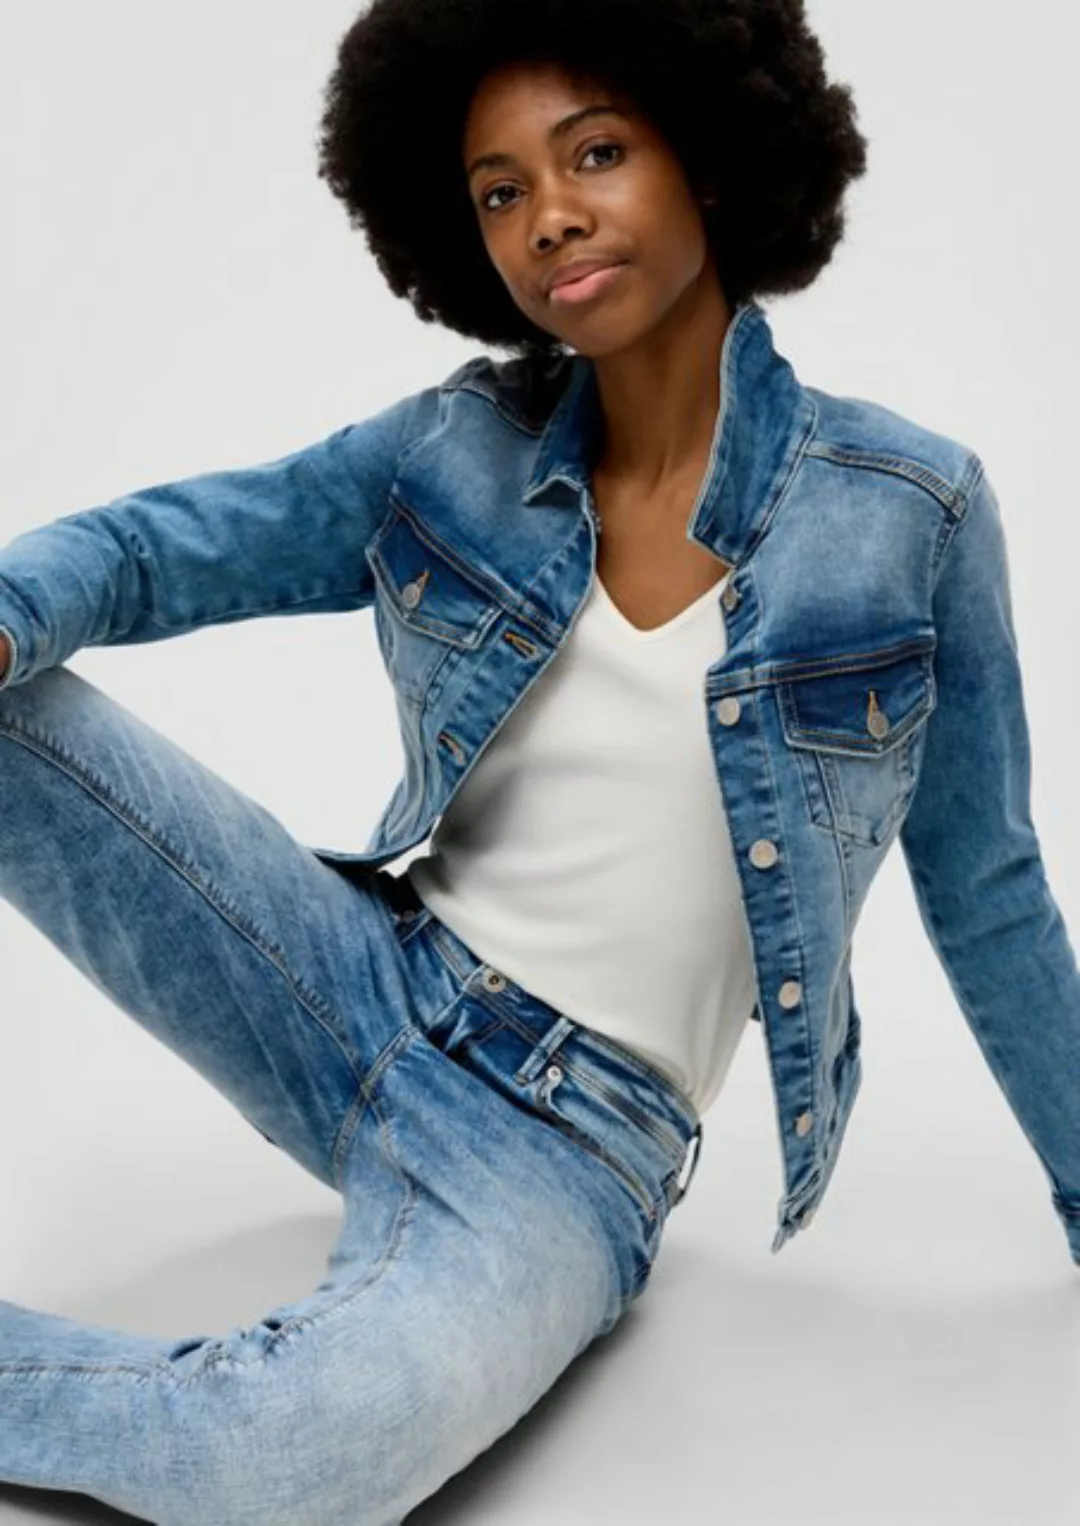 QS Outdoorjacke Klassische Jeansjacke Teilungsnähte günstig online kaufen